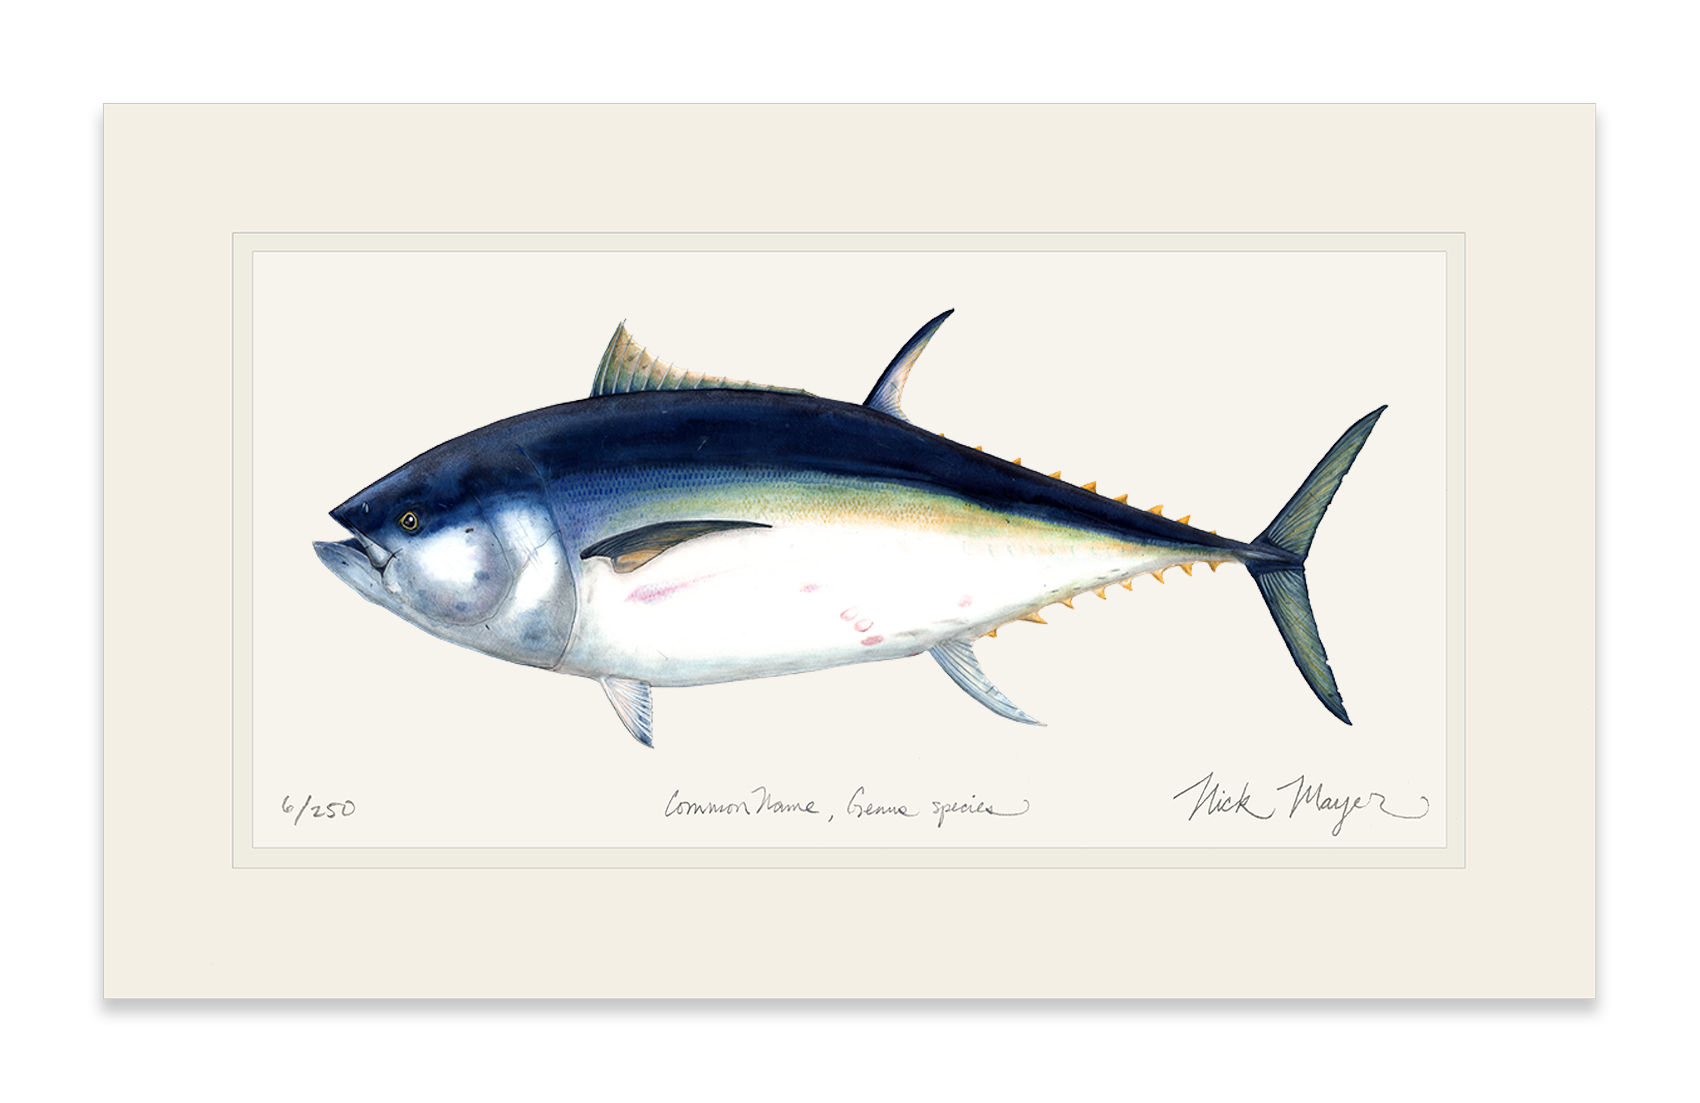 Giant Bluefin Tuna I Print